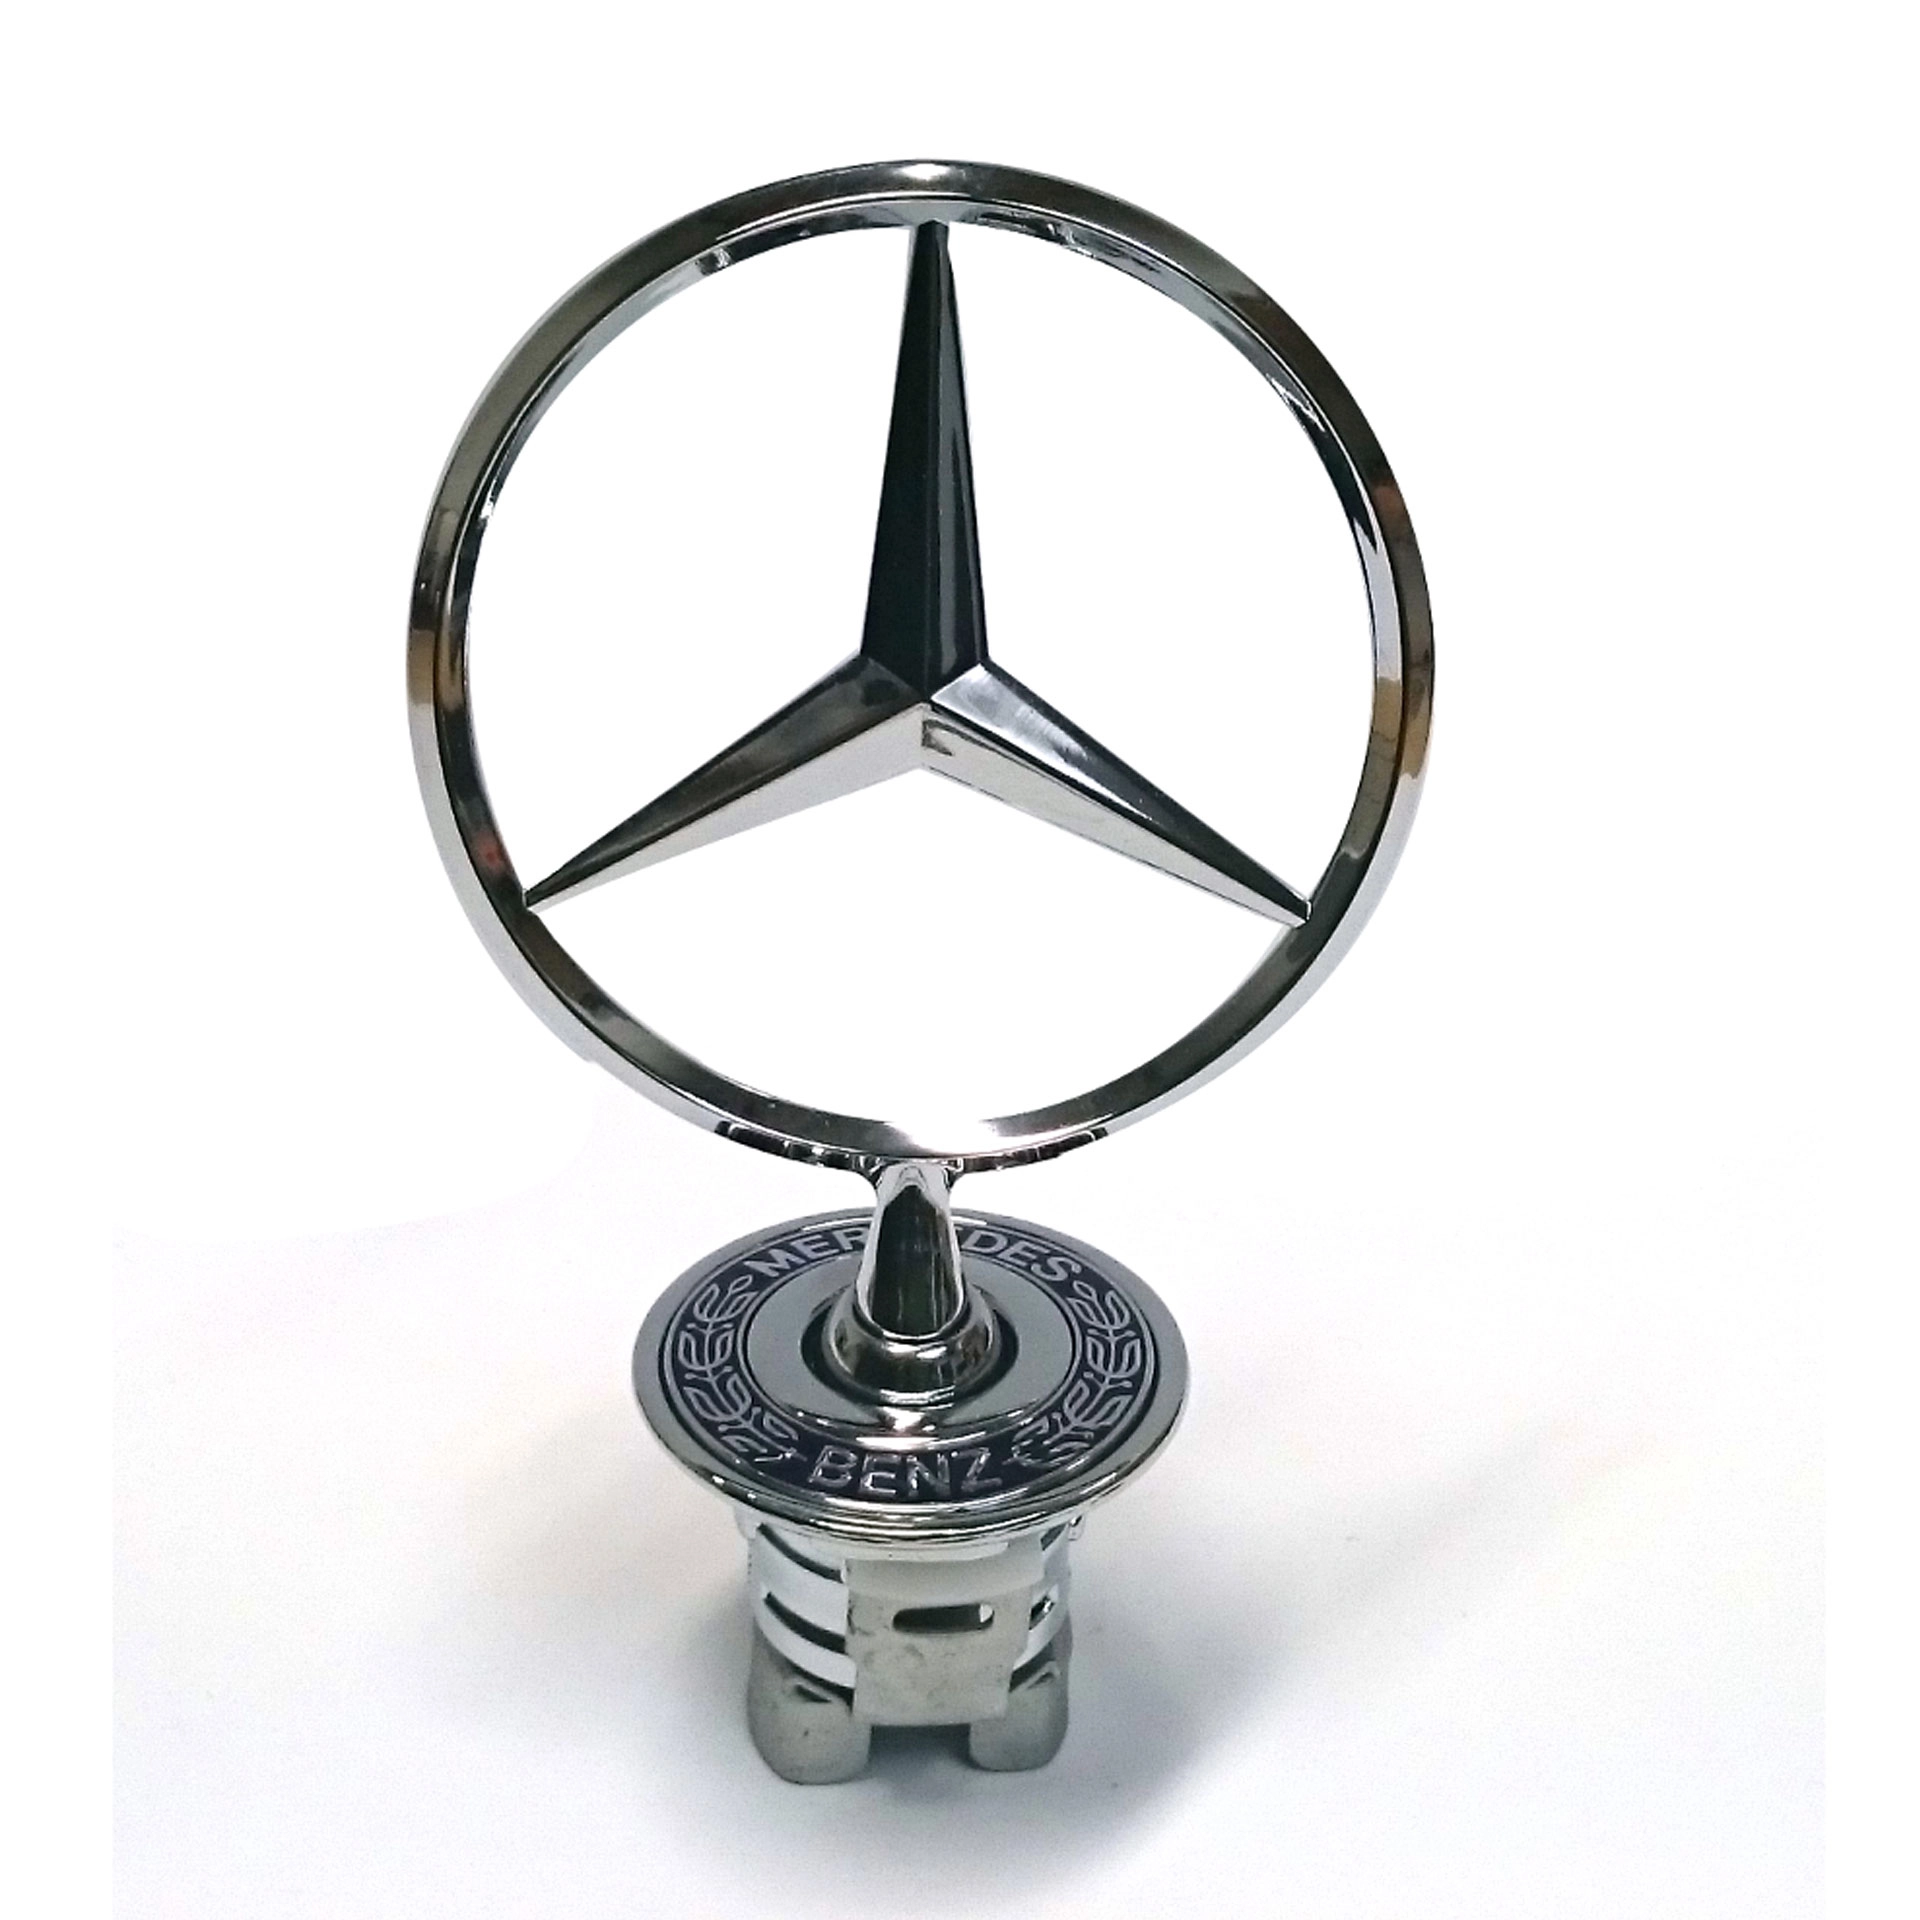 Original Mercedes-Benz Emblem Motorhaube mit Stern schwarz